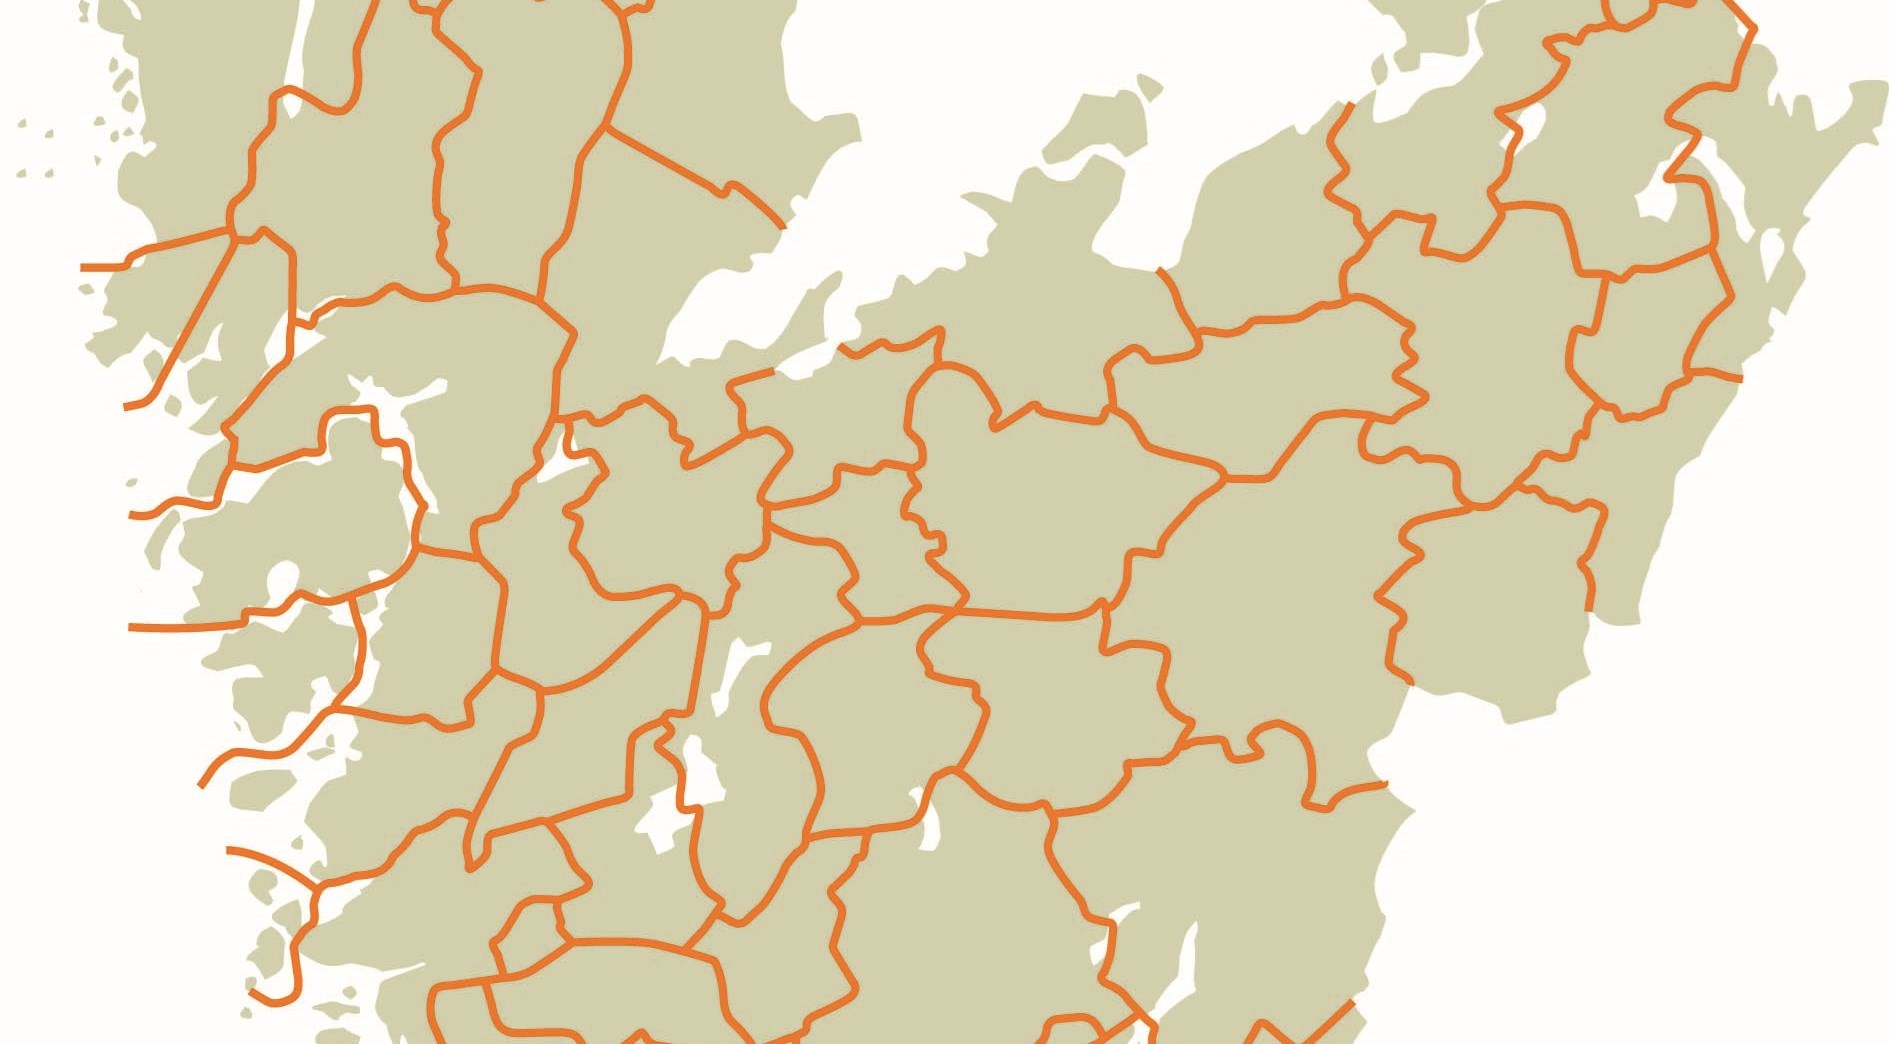 Karta över Västra Götaland med kommungränserna markerade